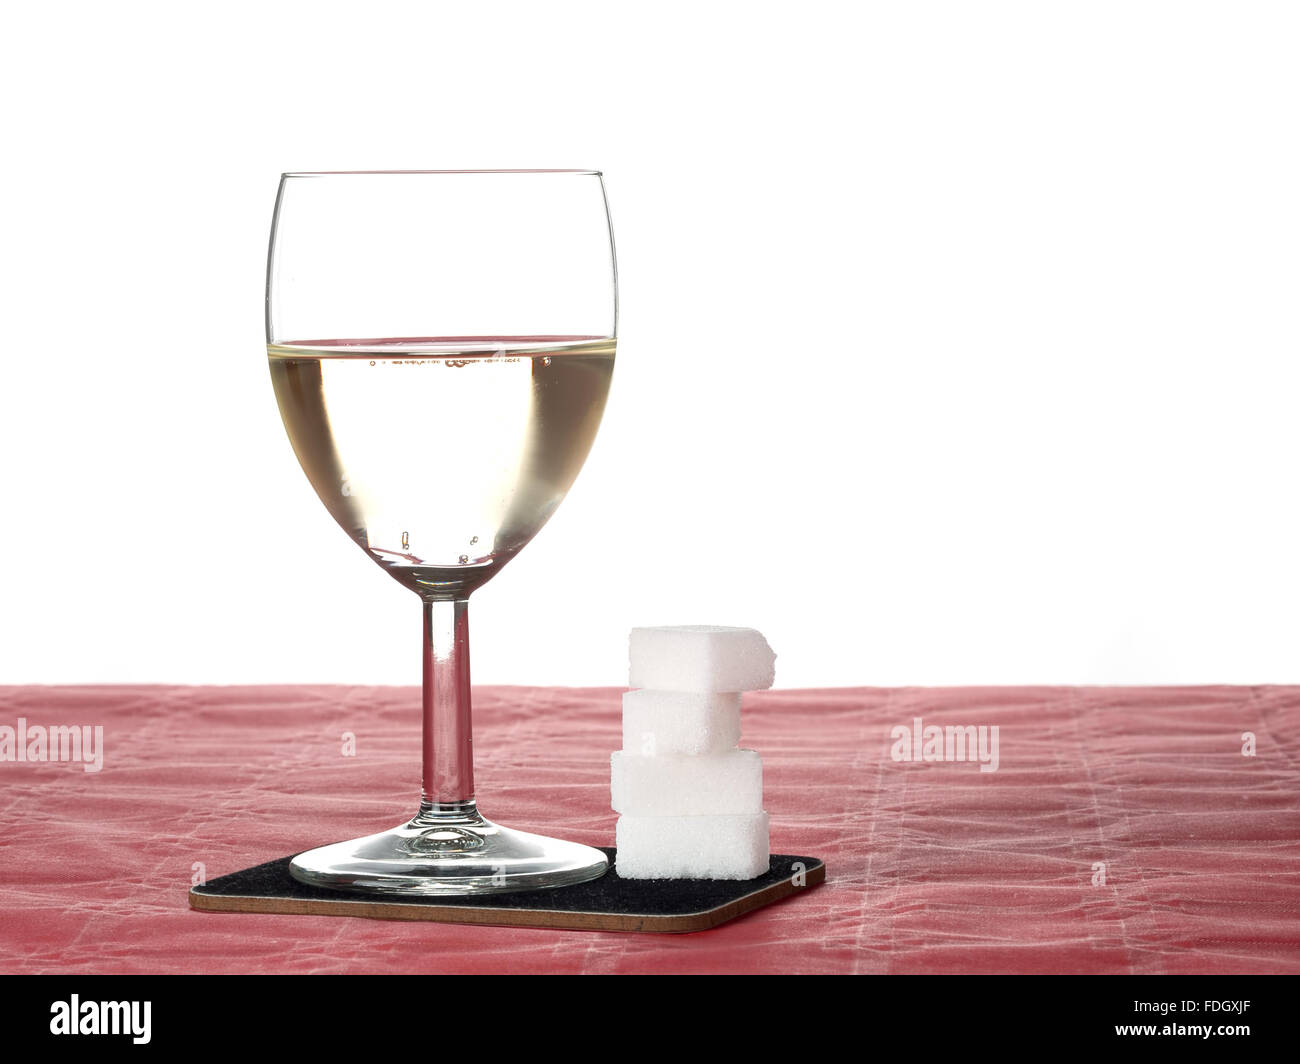 Kalorien im Alkohol, süßen Weißwein und Würfelzucker Stockfotografie - Alamy